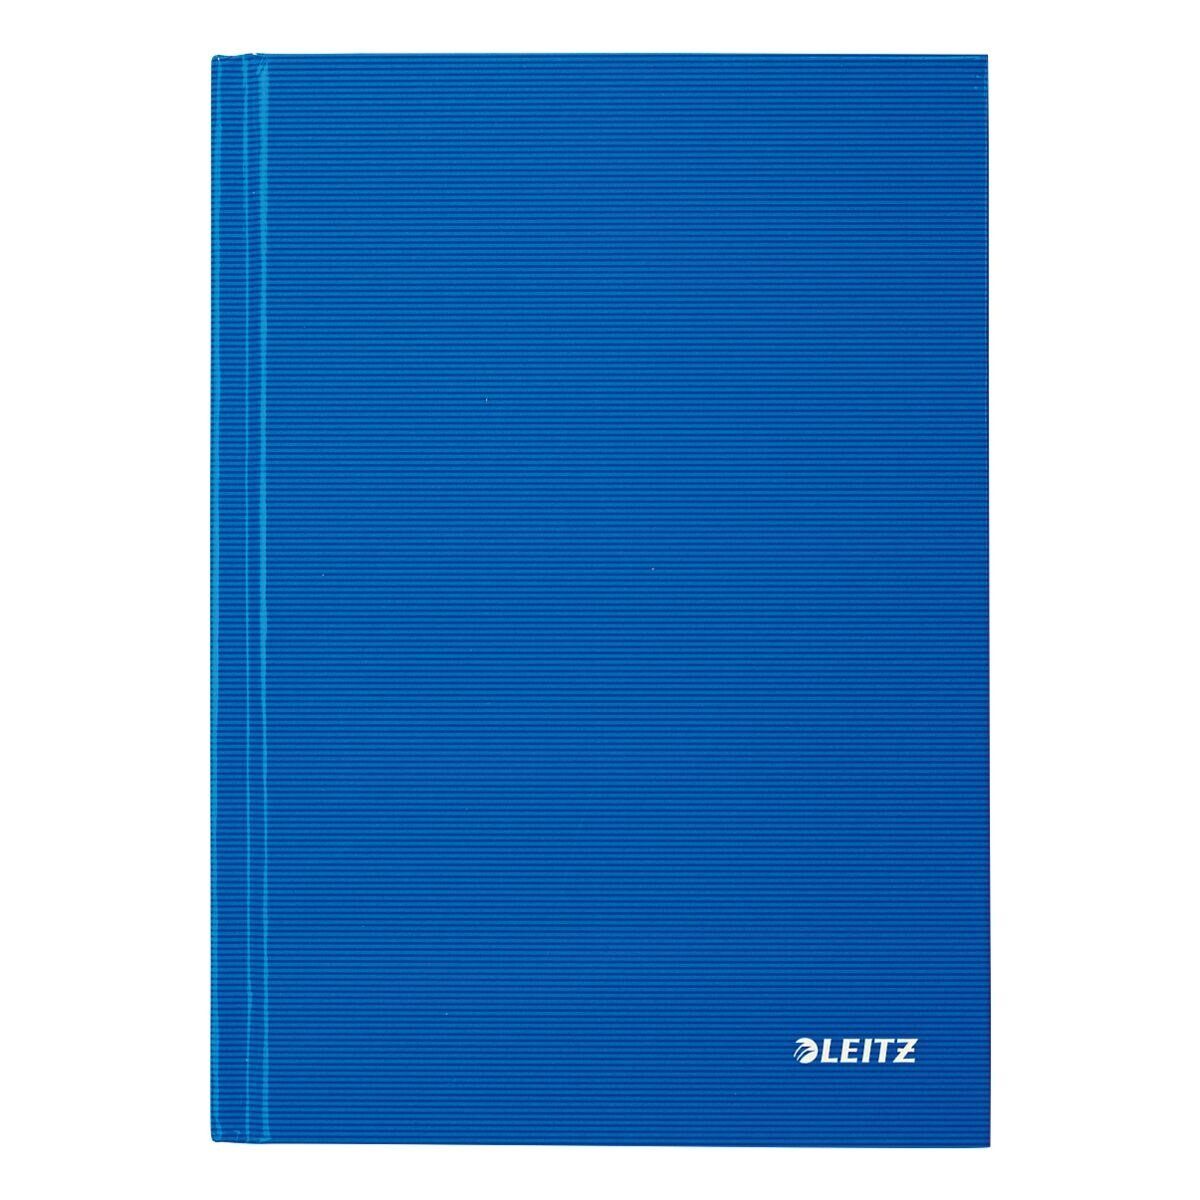 LEITZ Notizbuch Solid Introseiten, Hardcover 4666, mit hellblau kariert